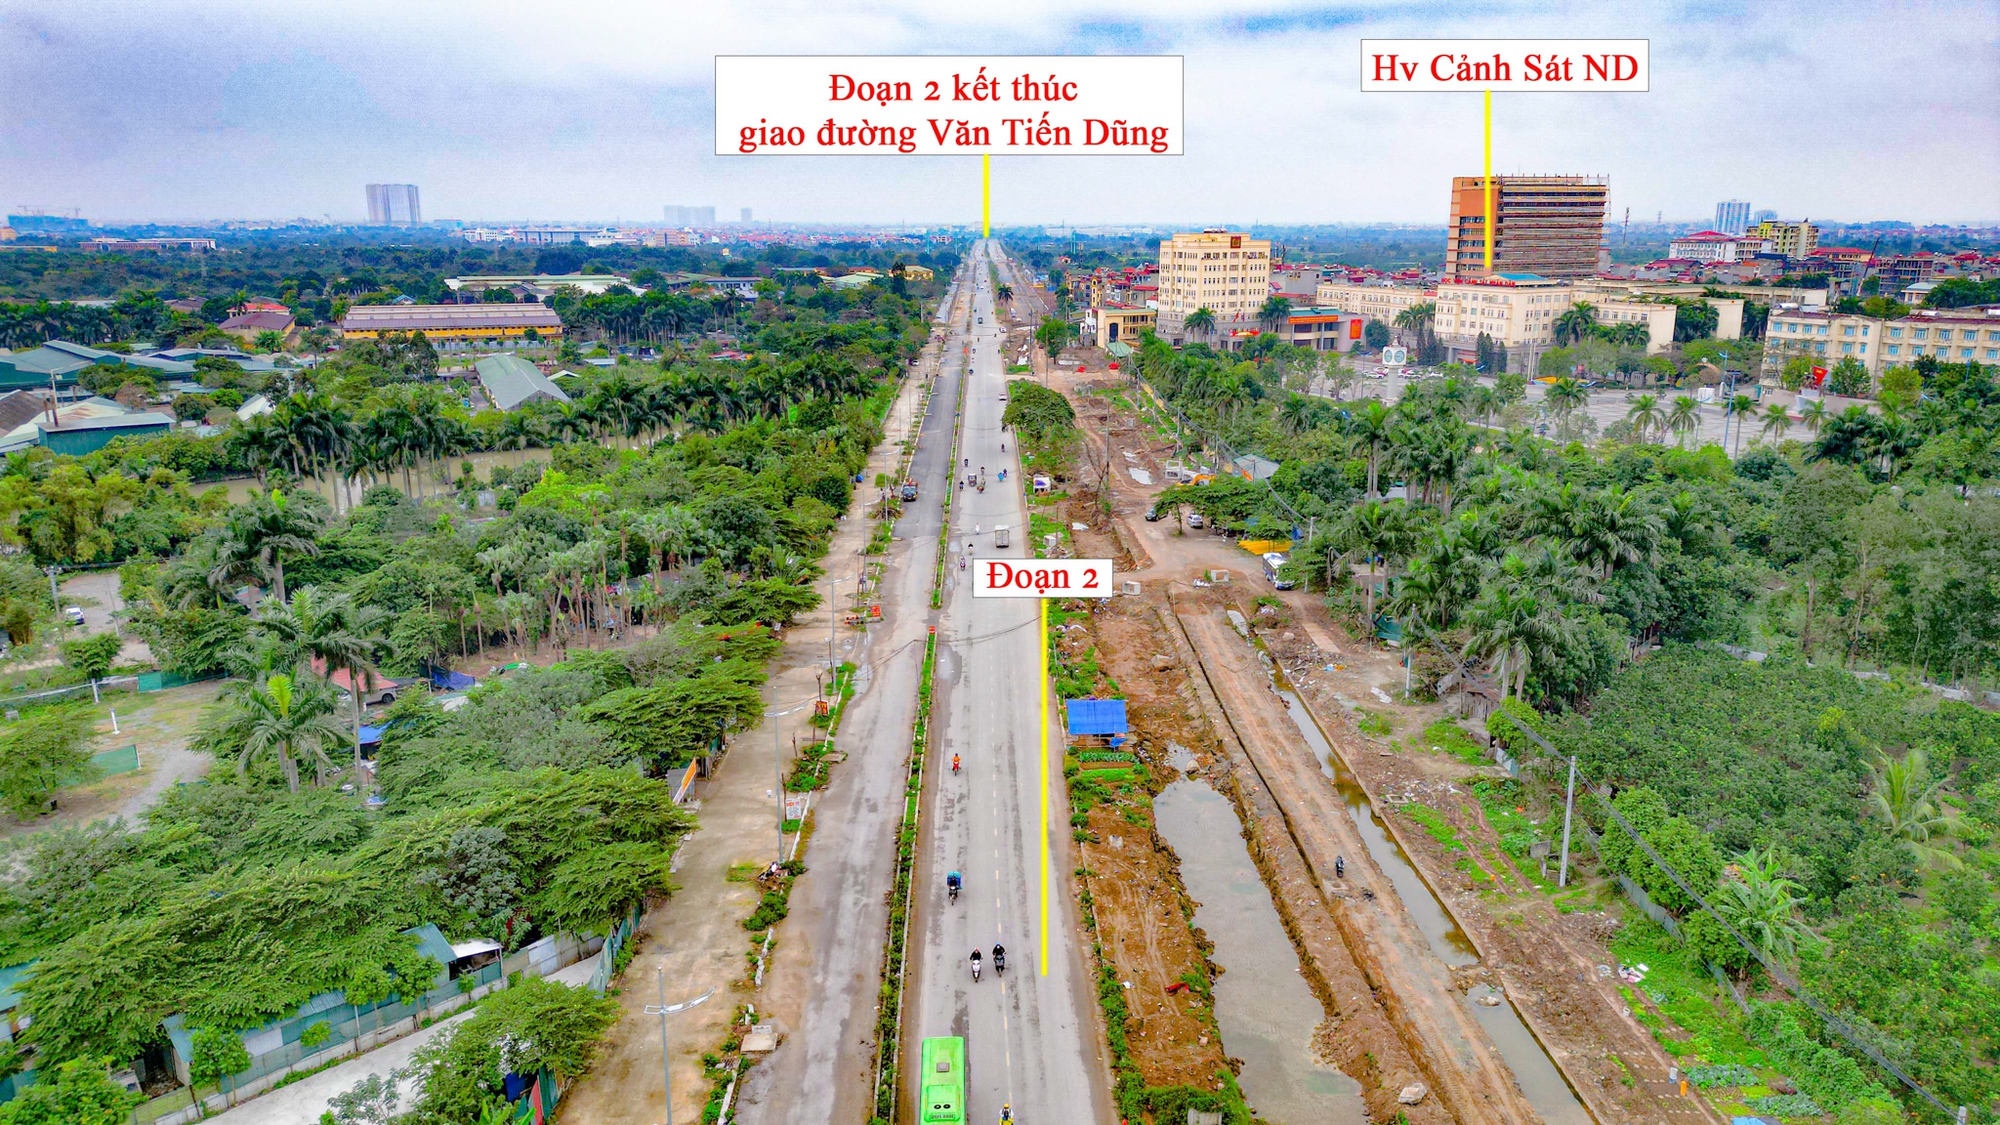 Toàn cảnh tuyến đường 10 làn xe xuyên qua khu đô thị đắt đỏ bậc nhất Hà Nội, tương lai sẽ làm thay đổi toàn bộ bất động sản trục Hồ Tây - Ba Vì- Ảnh 6.